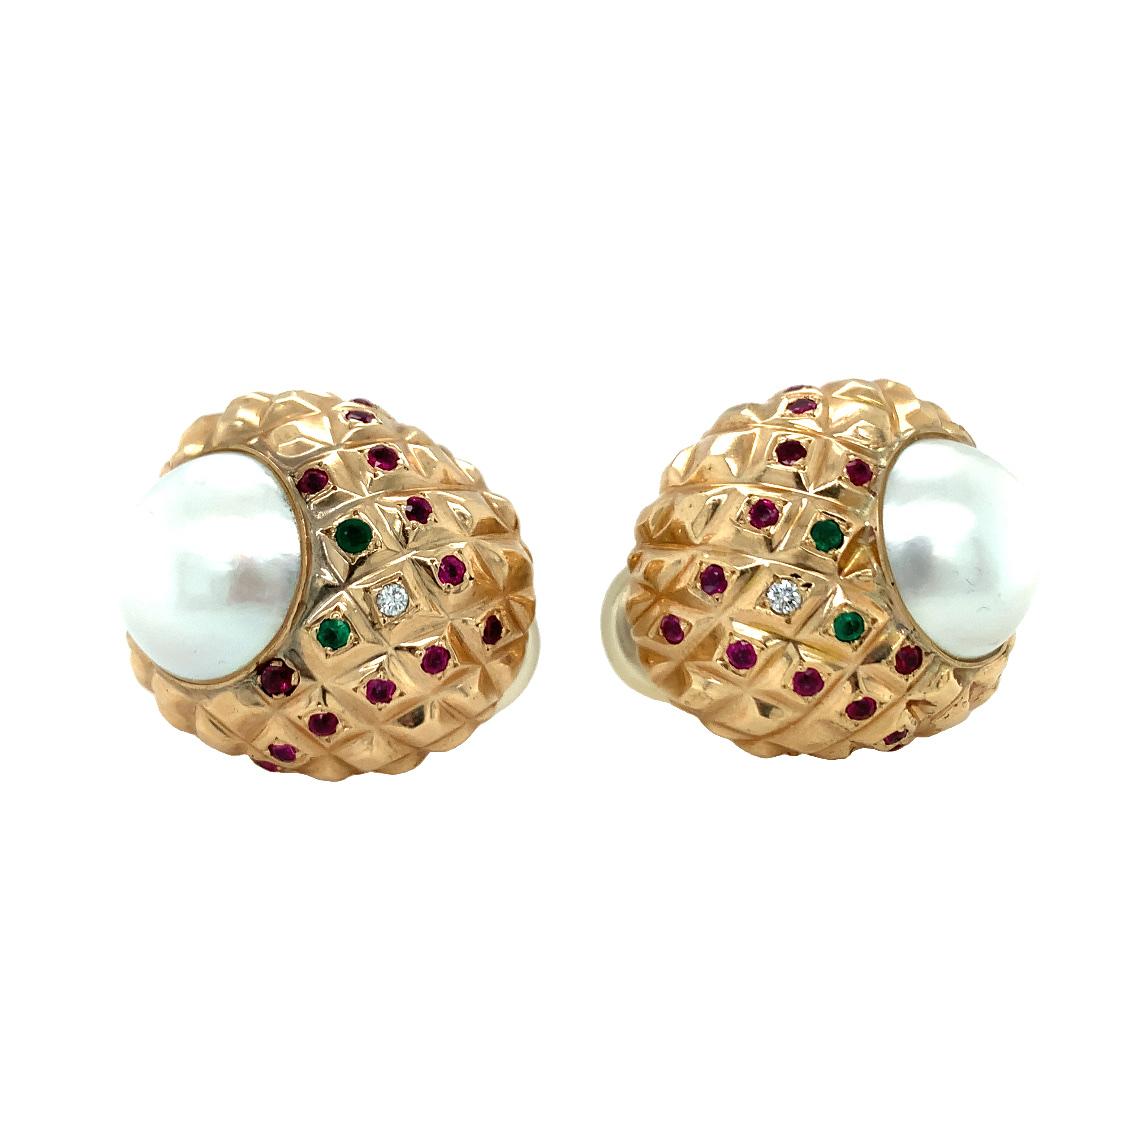 Ein Paar Ohrringe aus 18-karätigem Gelbgold mit Perlen und mehreren Edelsteinen. Zwei weiße Mabe-Perlen mit einem Durchmesser von 15 Millimetern und rosafarbenen Obertönen. Die klobigen, ohrumschließenden Ohrringe werden durch 26 runde Rubine mit